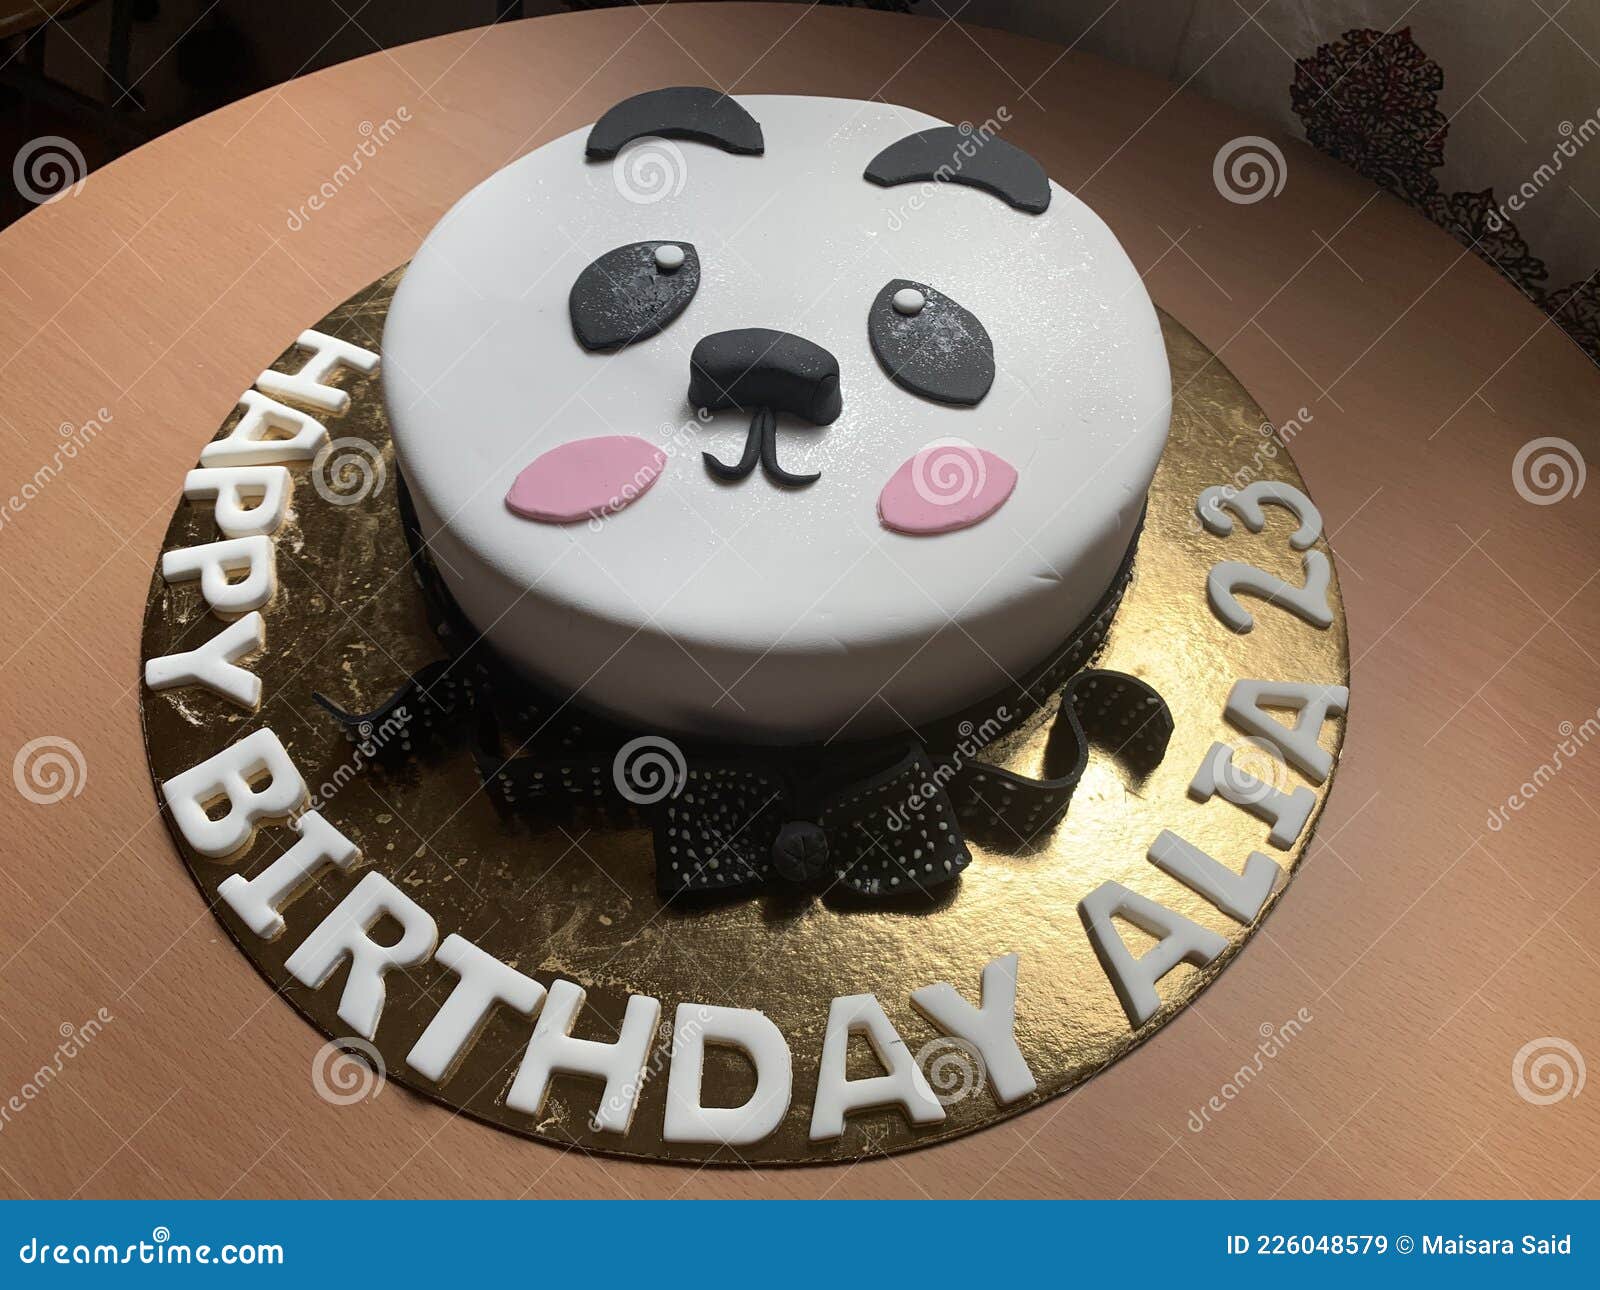 大熊猫的生日蛋糕集锦，没有对比就没有伤害，熊伤心